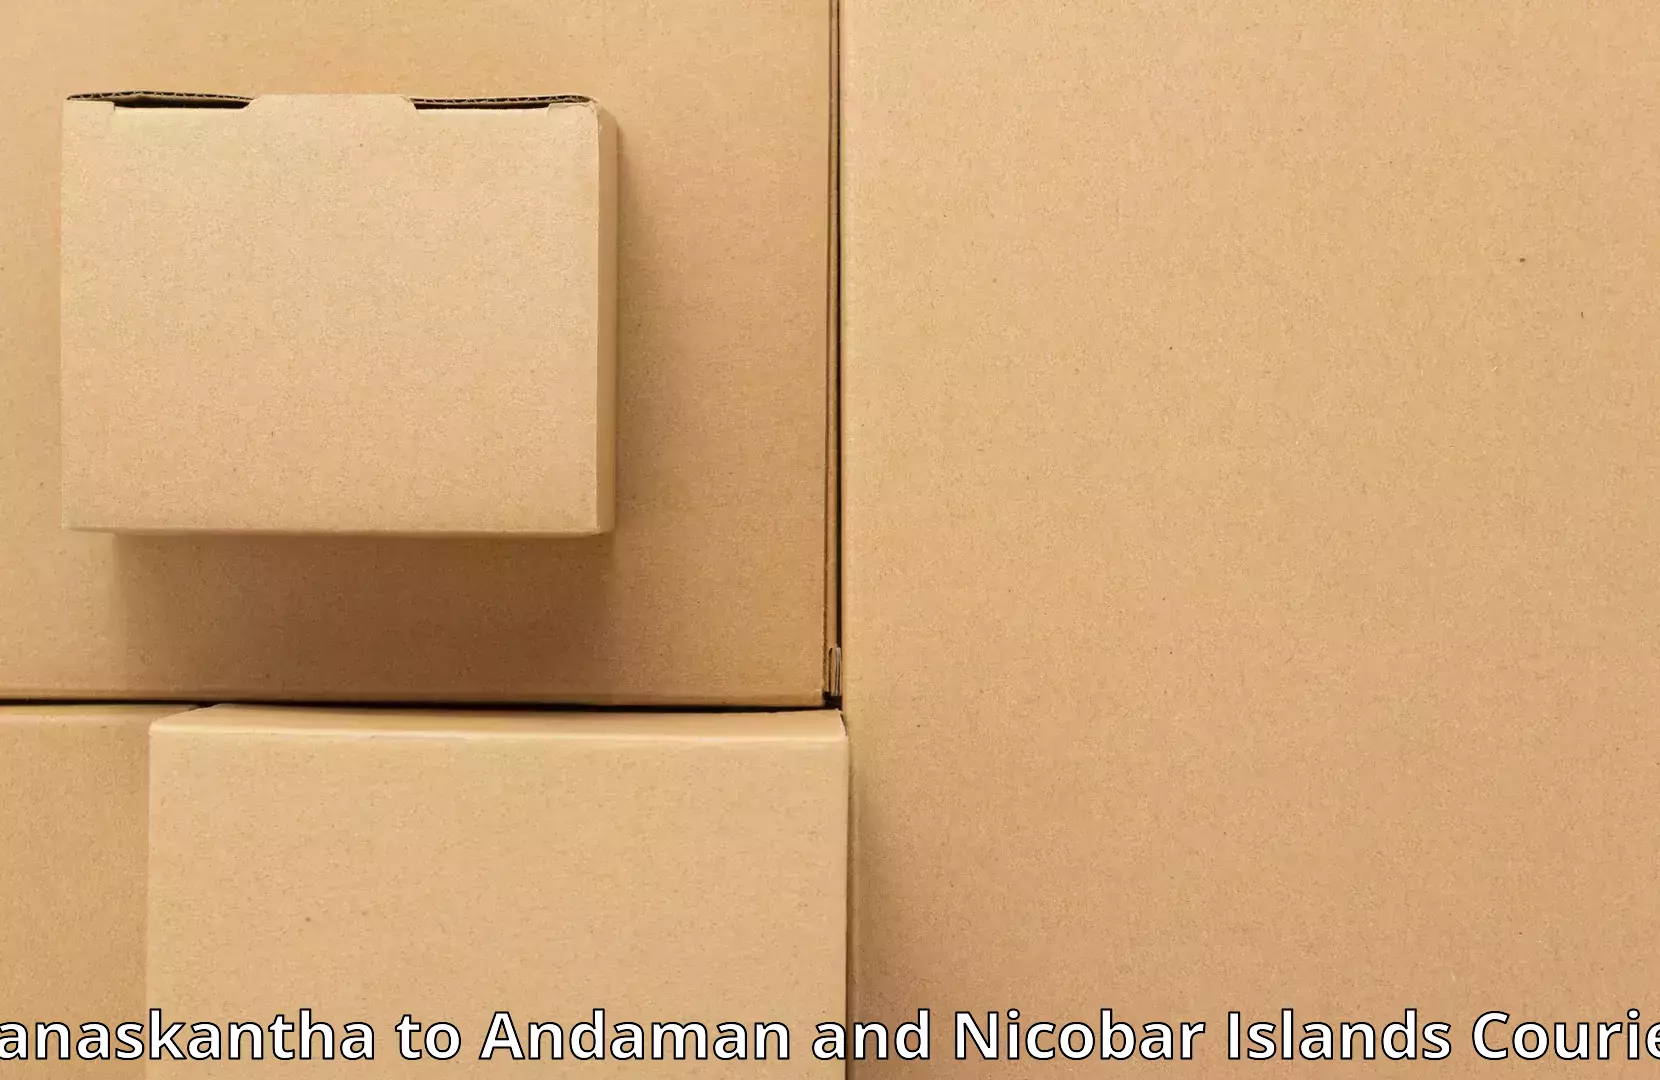 Furniture moving services Banaskantha to Andaman and Nicobar Islands